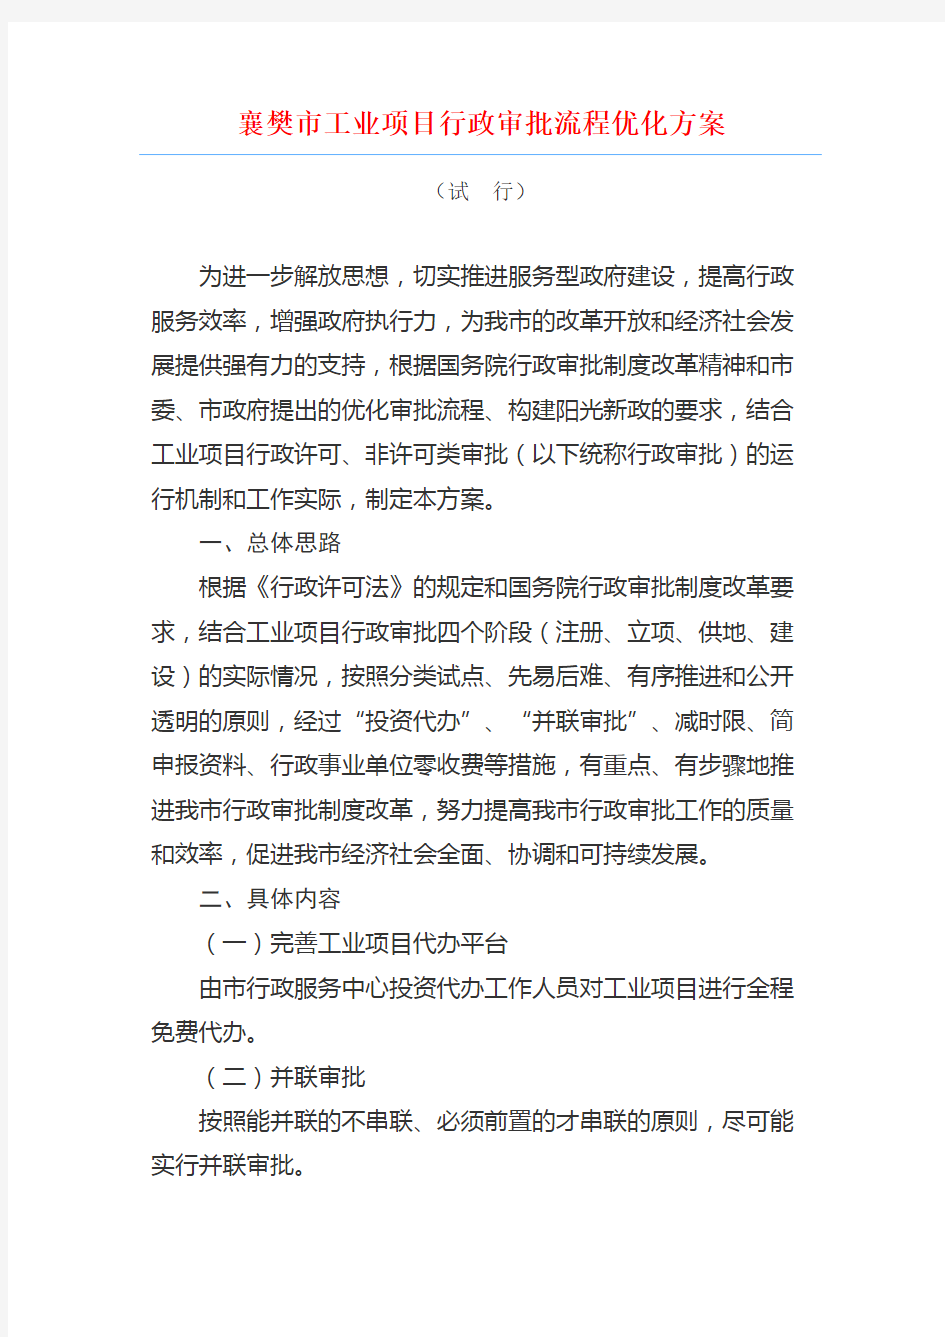 襄樊市工业项目行政审批流程优化方案